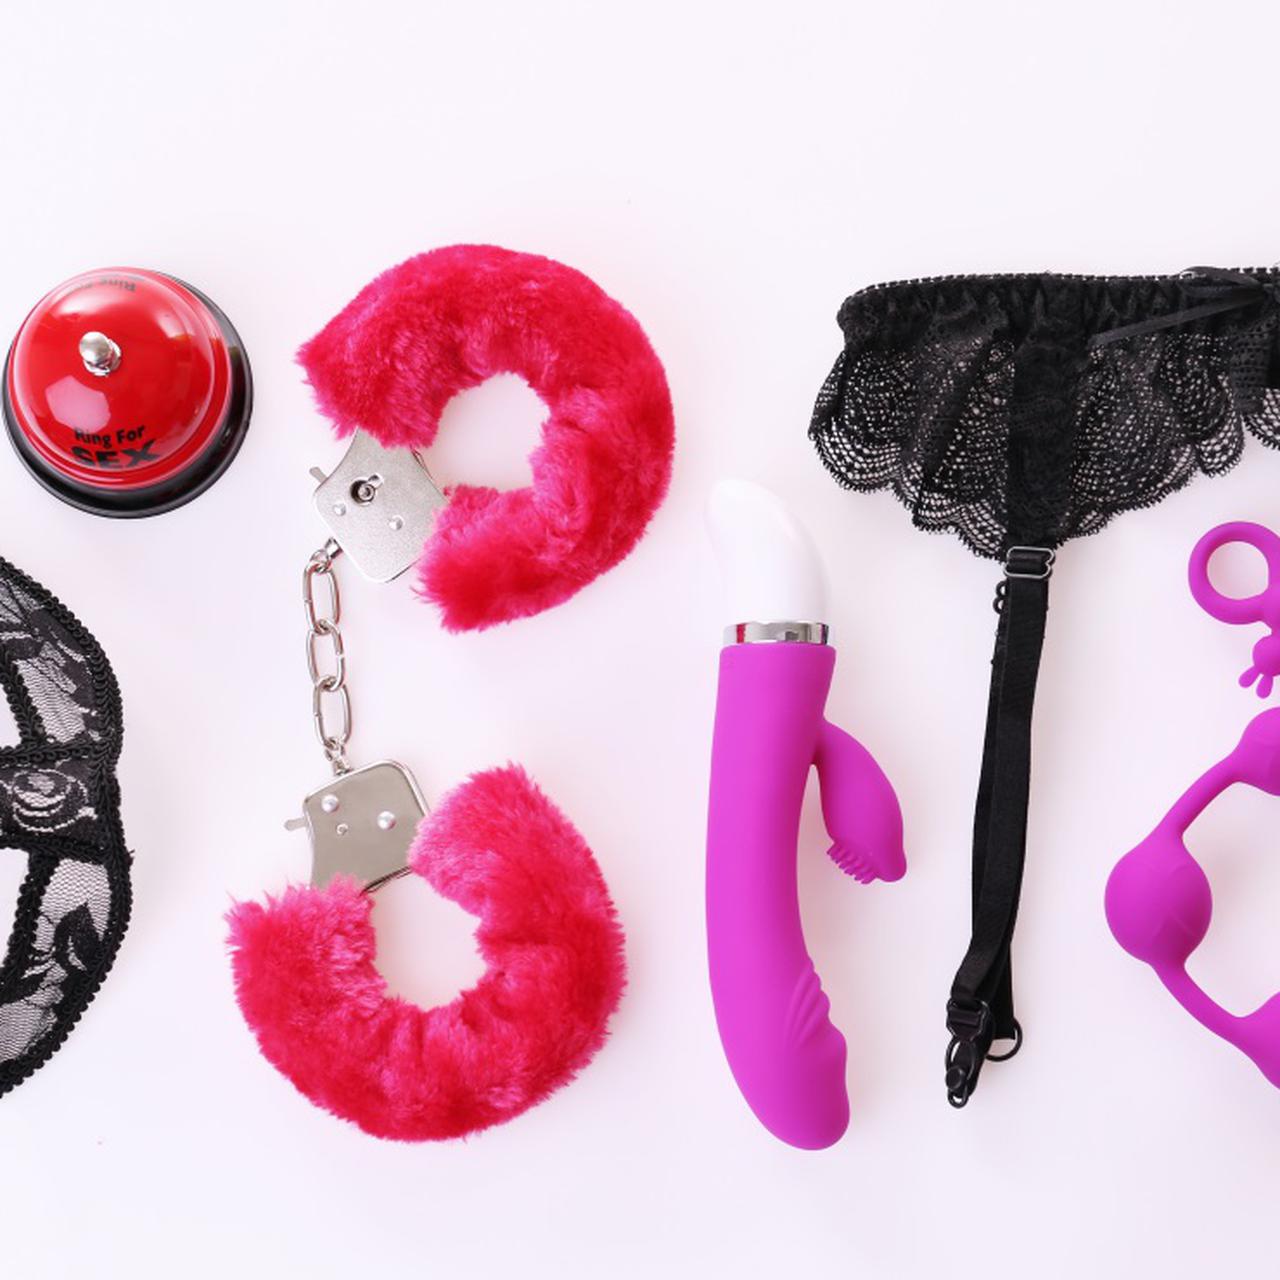 6 поз, подходящих для использования секс-игрушек: советы экспертов